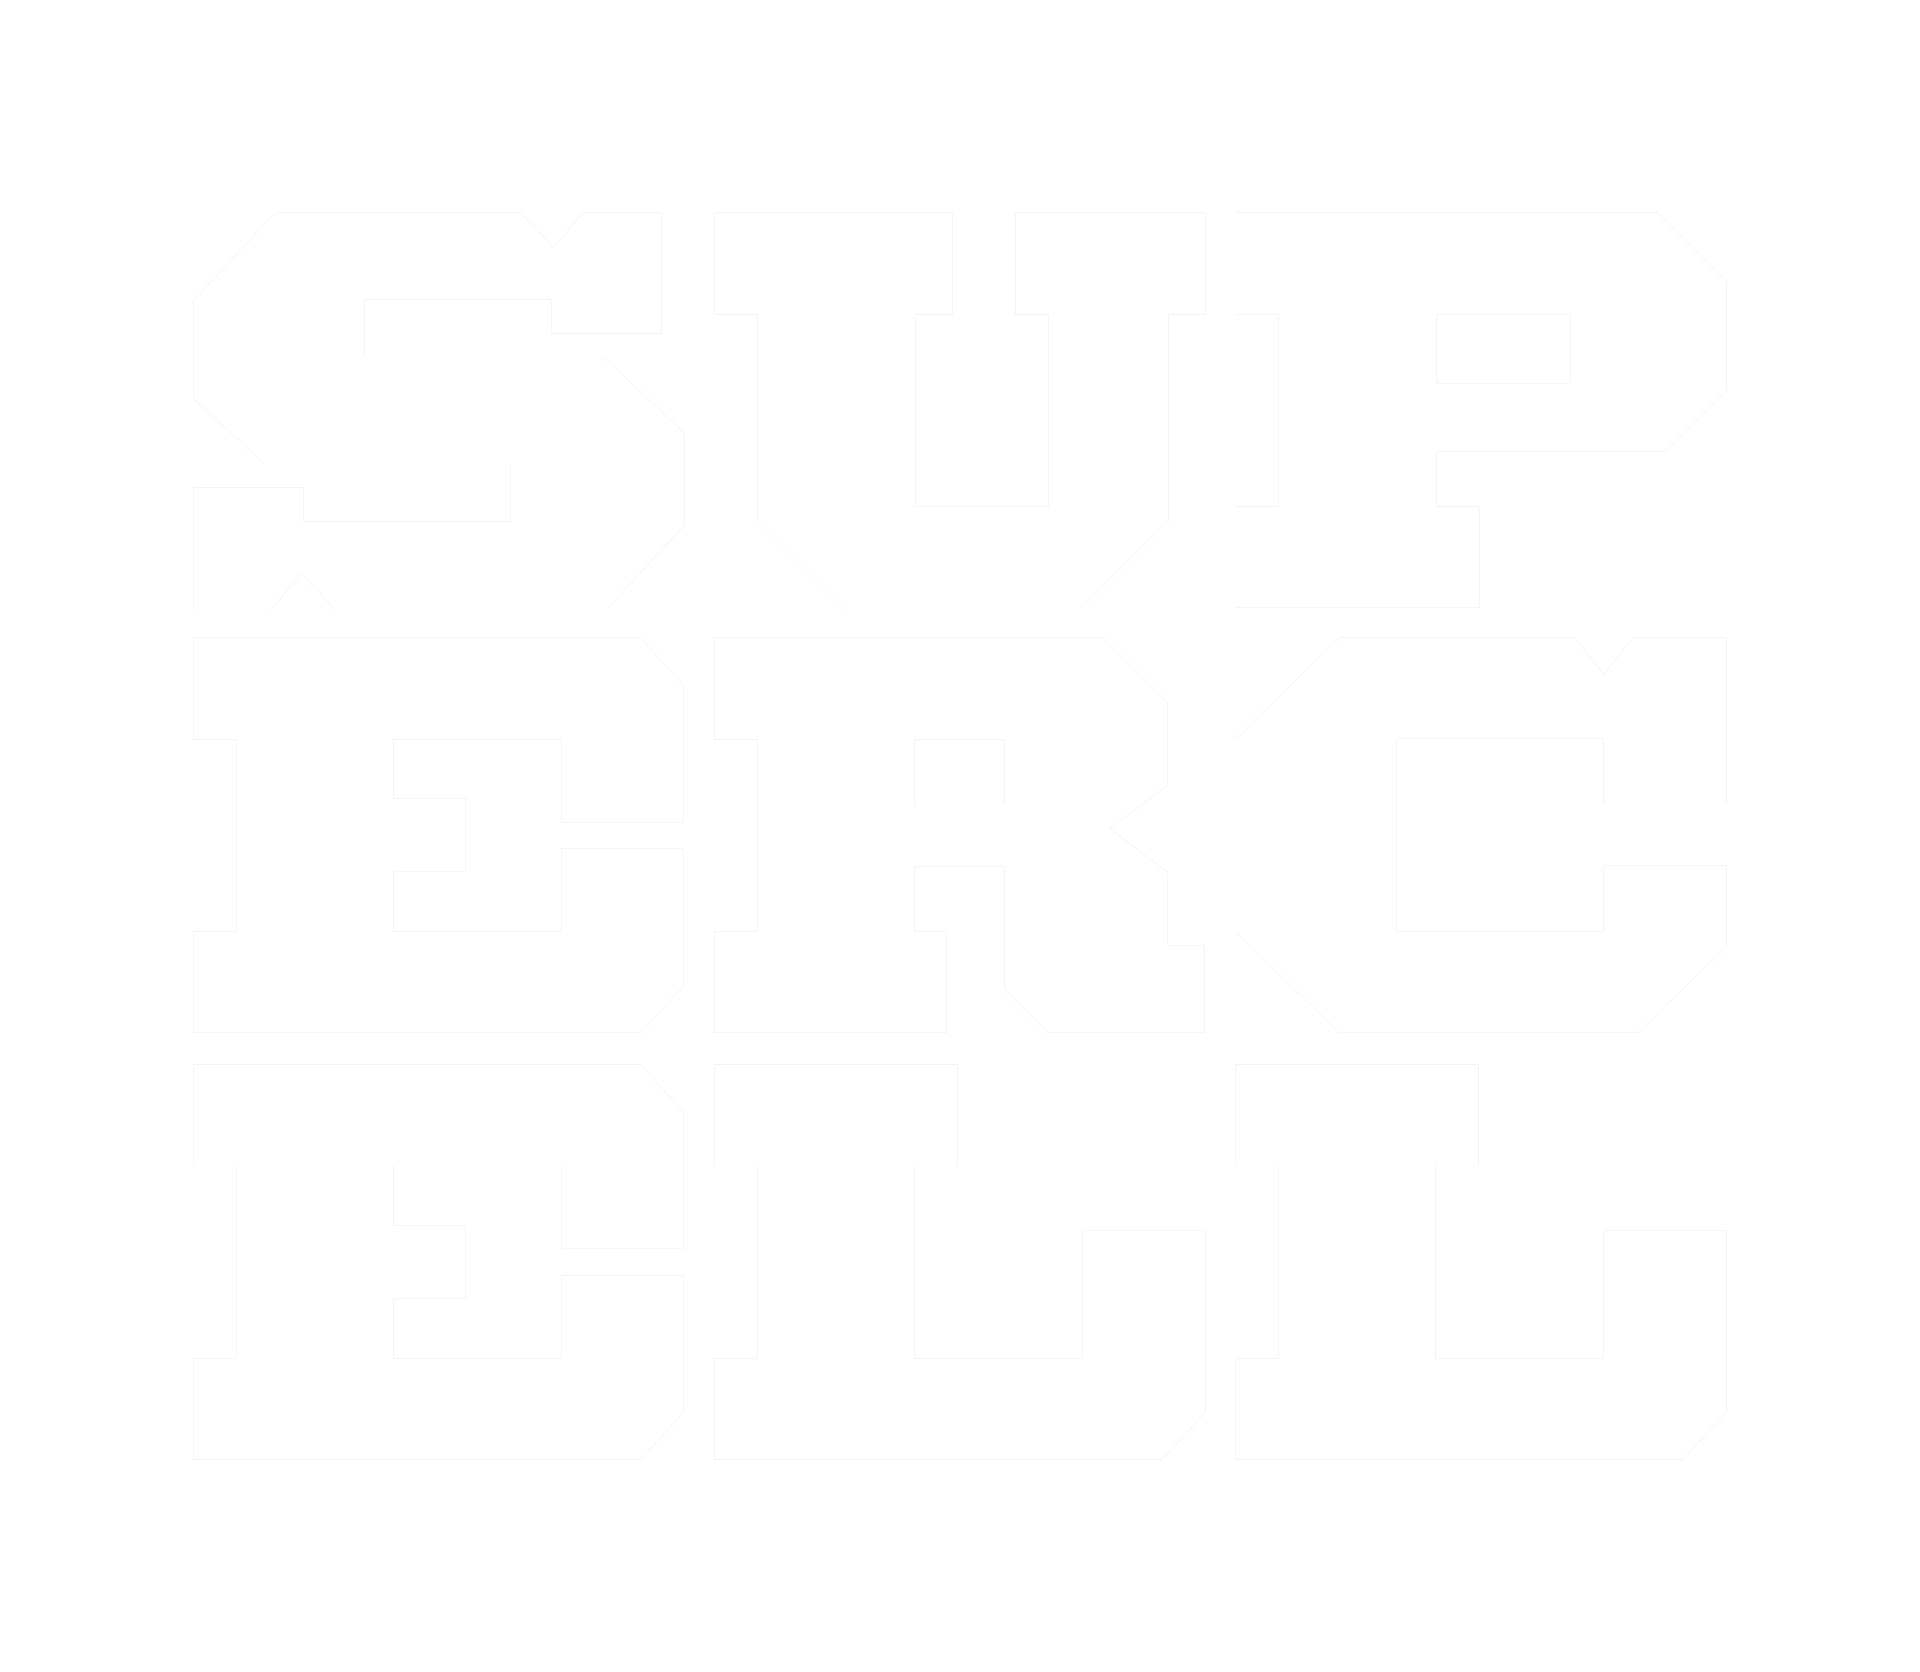 supercell logo white